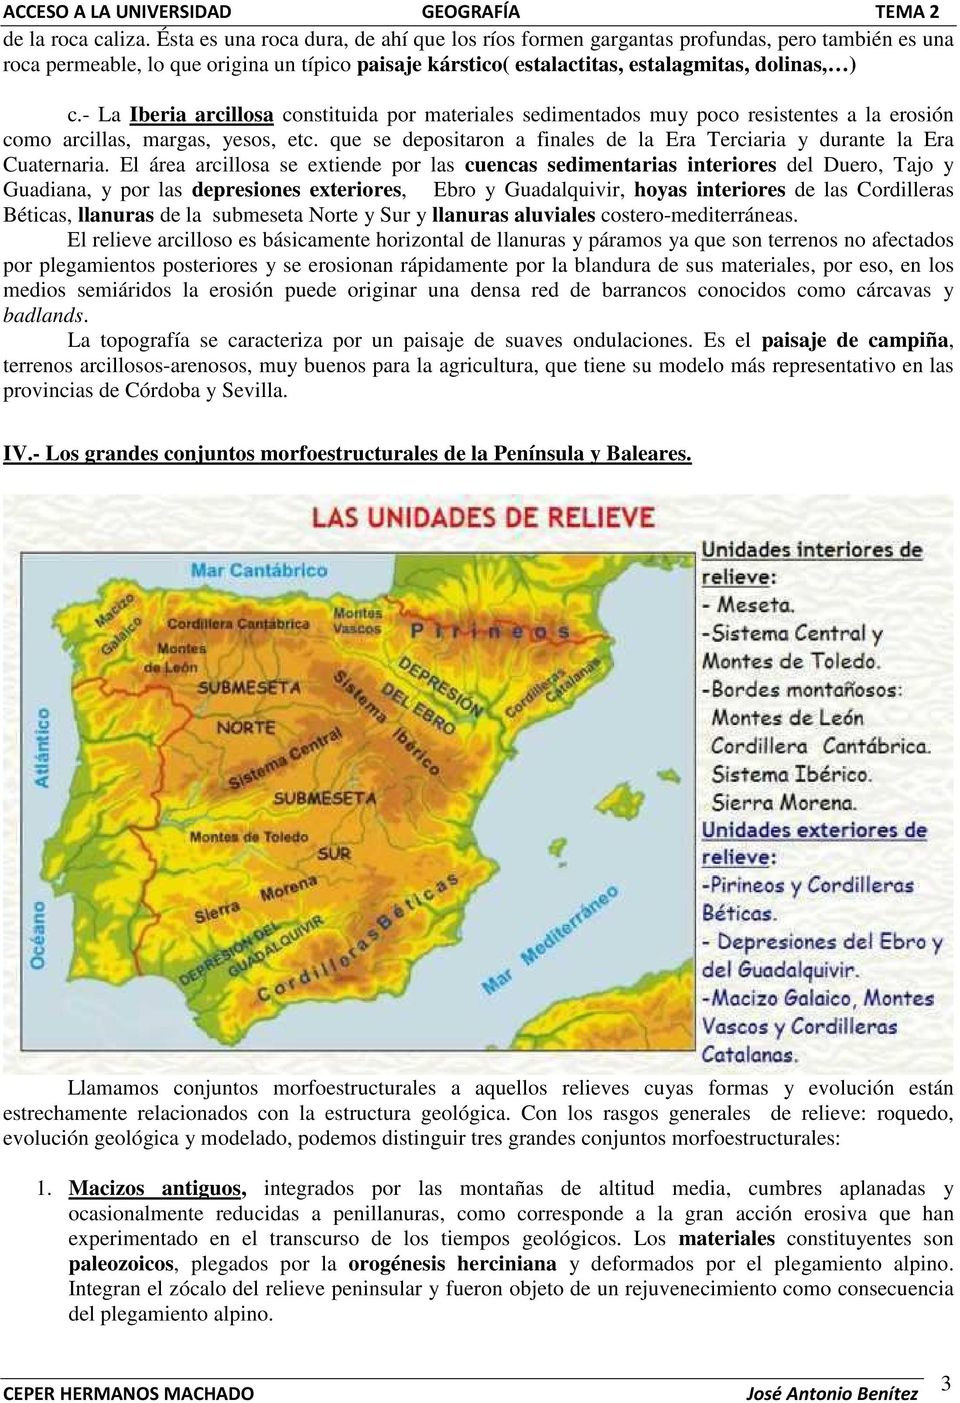 - La Iberia arcillosa constituida por materiales sedimentados muy poco resistentes a la erosión como arcillas, margas, yesos, etc.